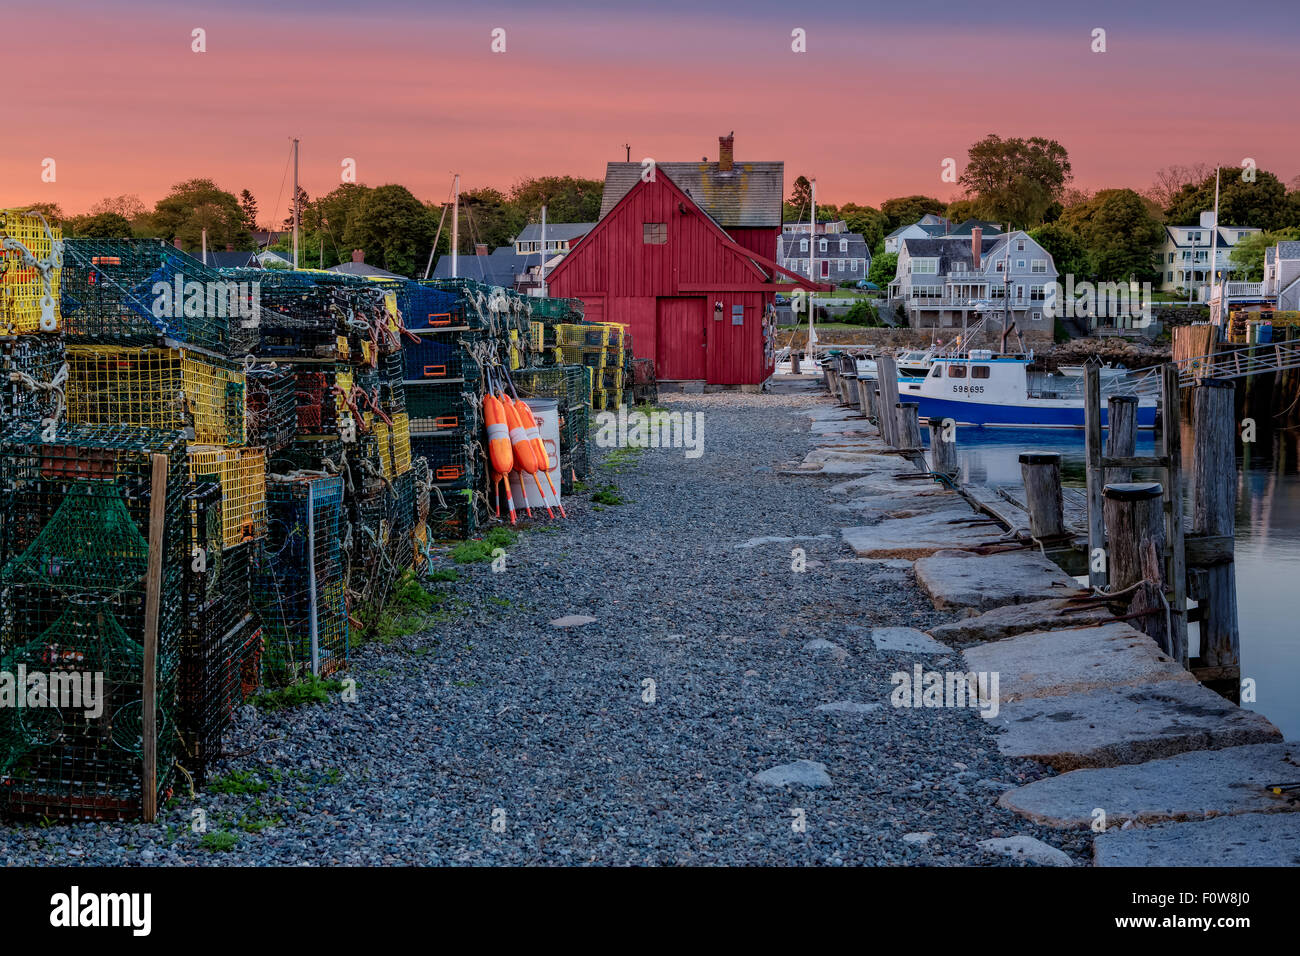 Erstes Licht am Motiv Nummer Eins - New England's Wahrzeichen von Bradley Wharf allgemein als Motiv Nummer Eins beim ersten Licht in Rockport, Massachusetts bekannt. Stockfoto